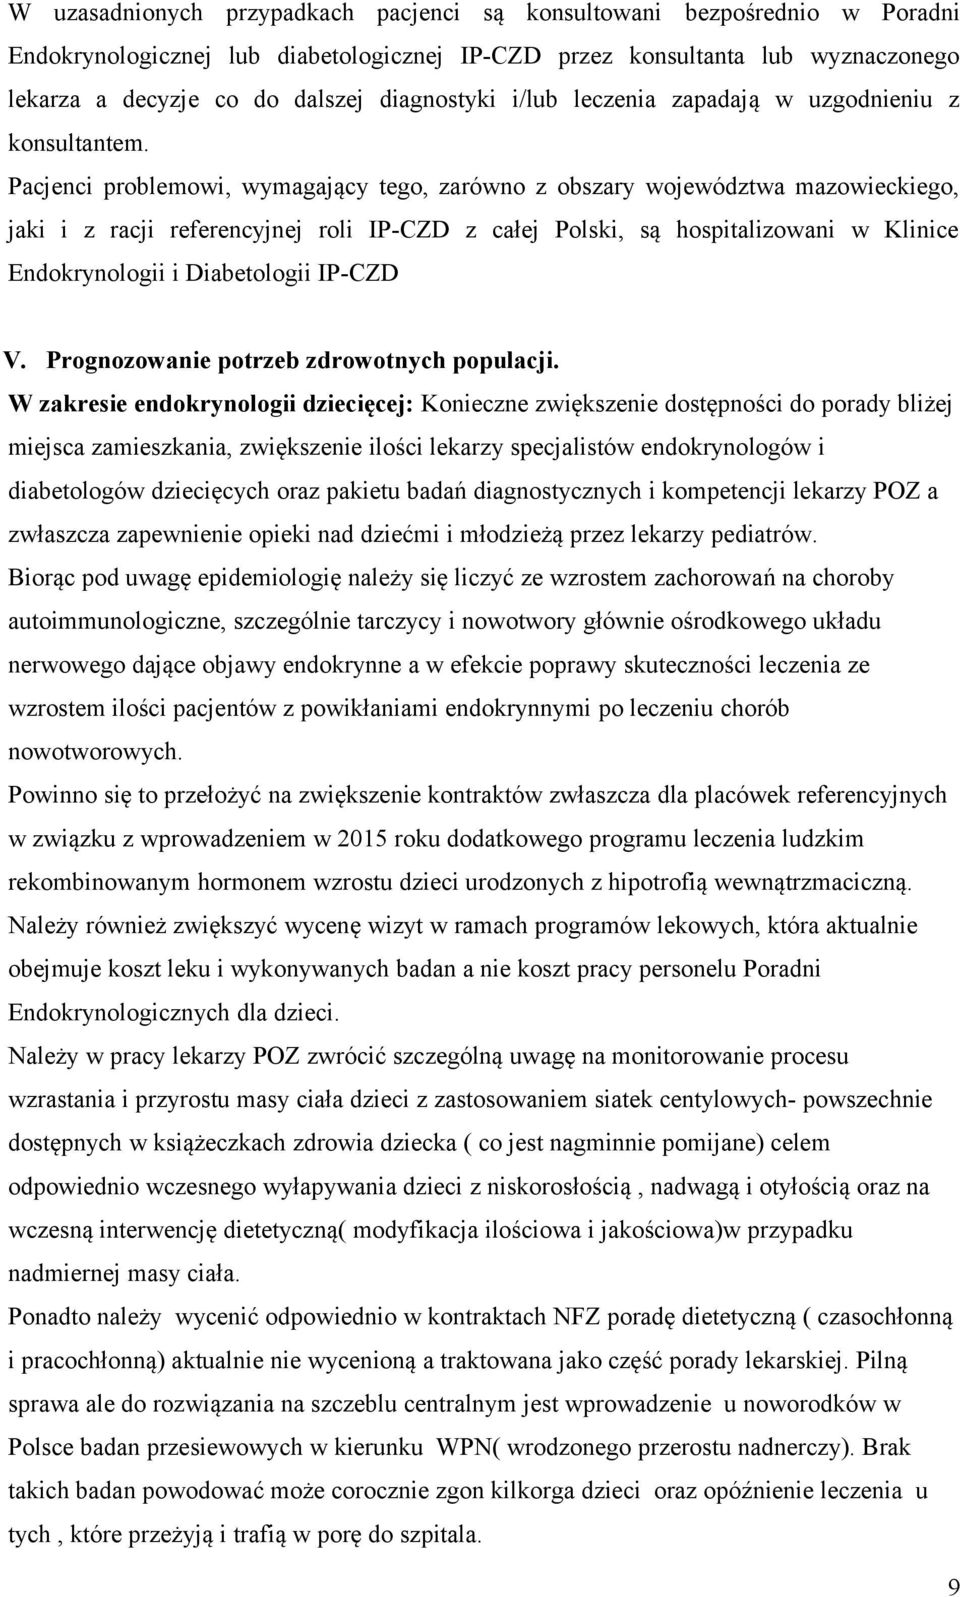 Pacjenci problemowi, wymagający tego, zarówno z obszary województwa mazowieckiego, jaki i z racji referencyjnej roli IP-CZD z całej Polski, są hospitalizowani w Klinice Endokrynologii i Diabetologii